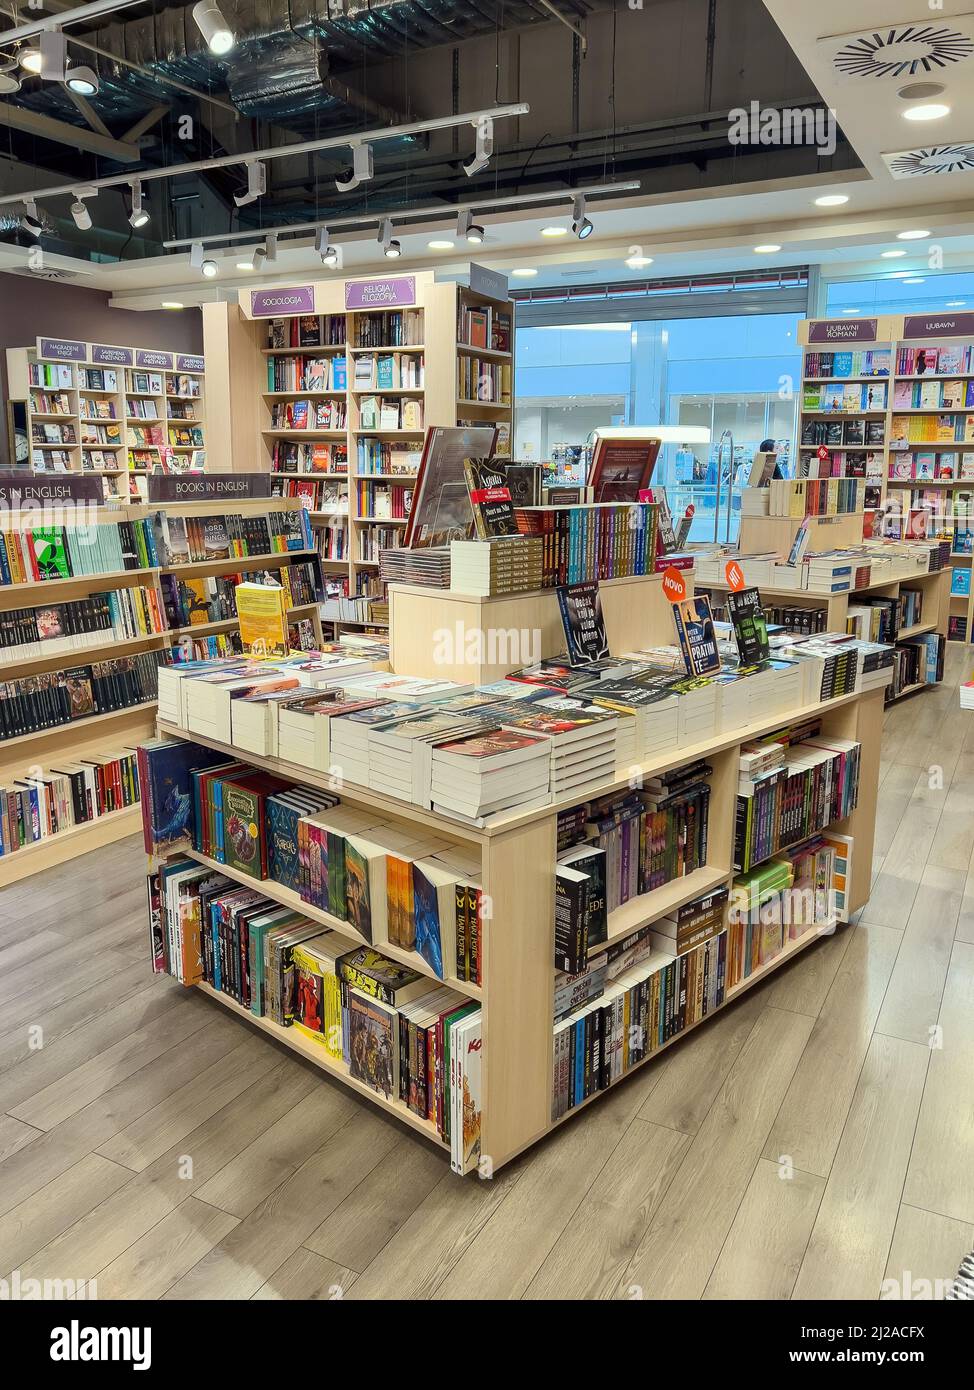 Novi Sad, Serbie - 18 mars 2022 : intérieur de la librairie Laguna Publishing avec livres sur étagères, éditorial. Laguna est parmi les plus grands publics Banque D'Images